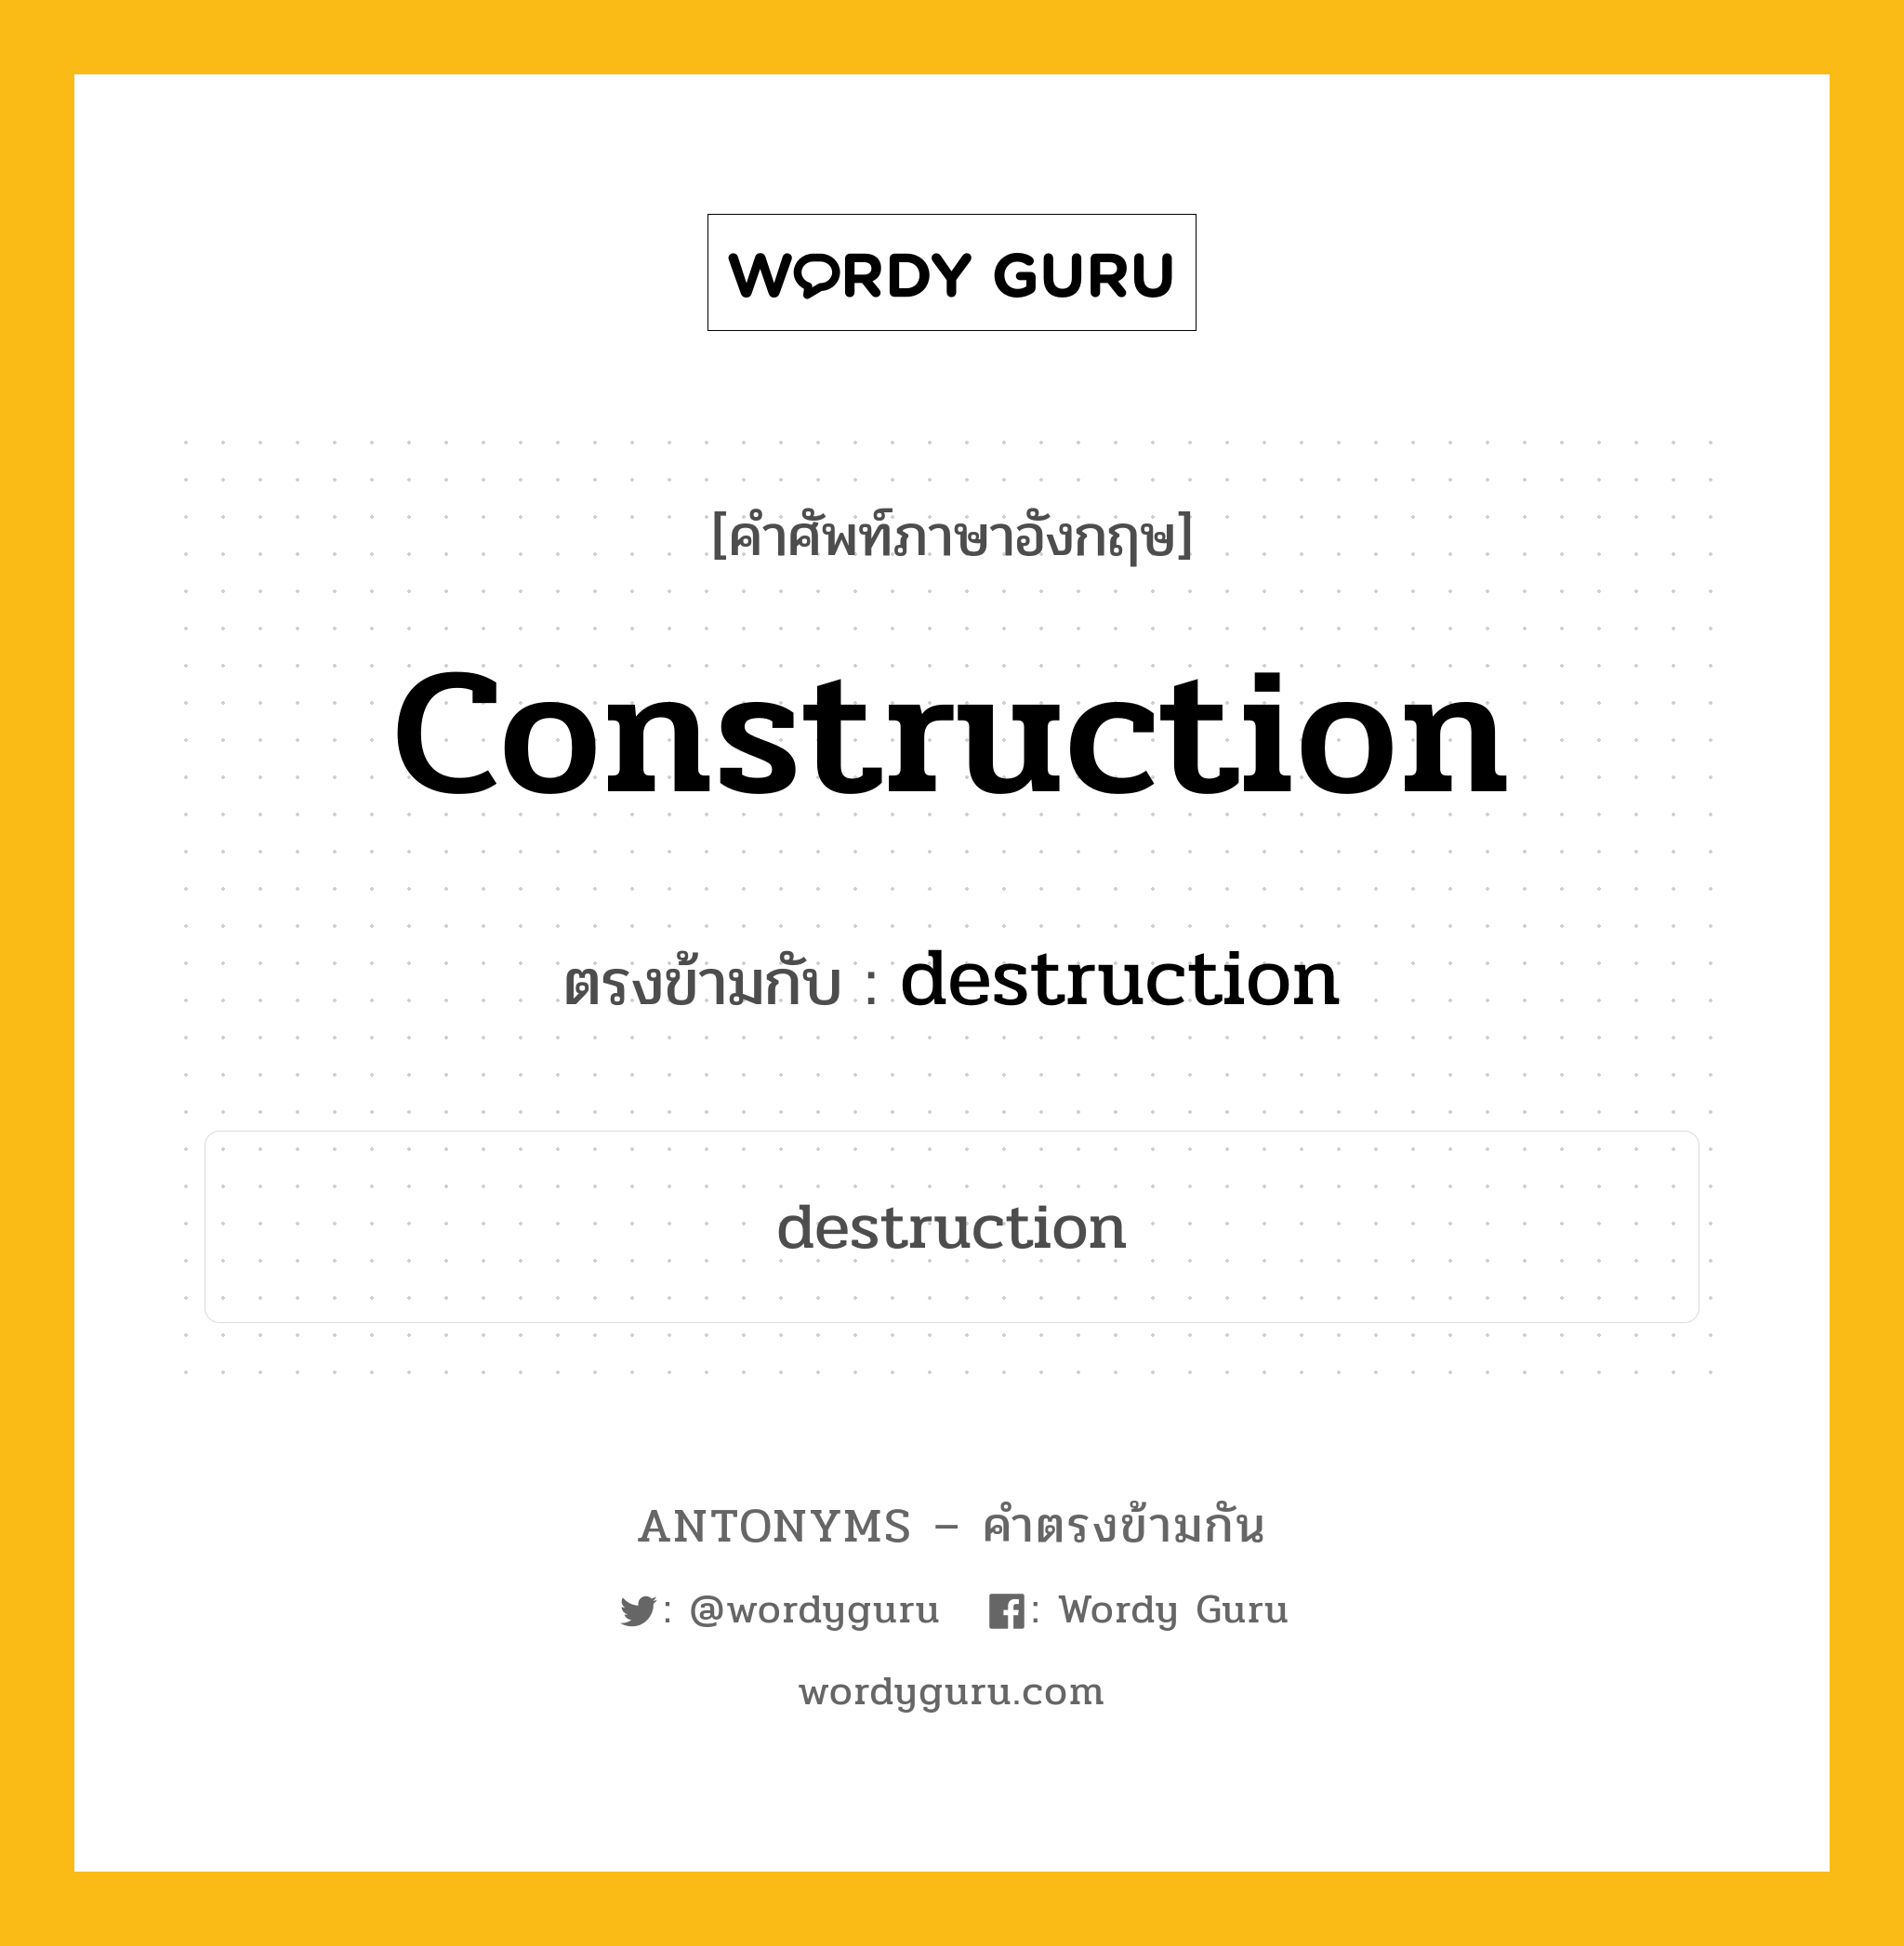 construction เป็นคำตรงข้ามกับคำไหนบ้าง?, คำศัพท์ภาษาอังกฤษ construction ตรงข้ามกับ destruction หมวด destruction